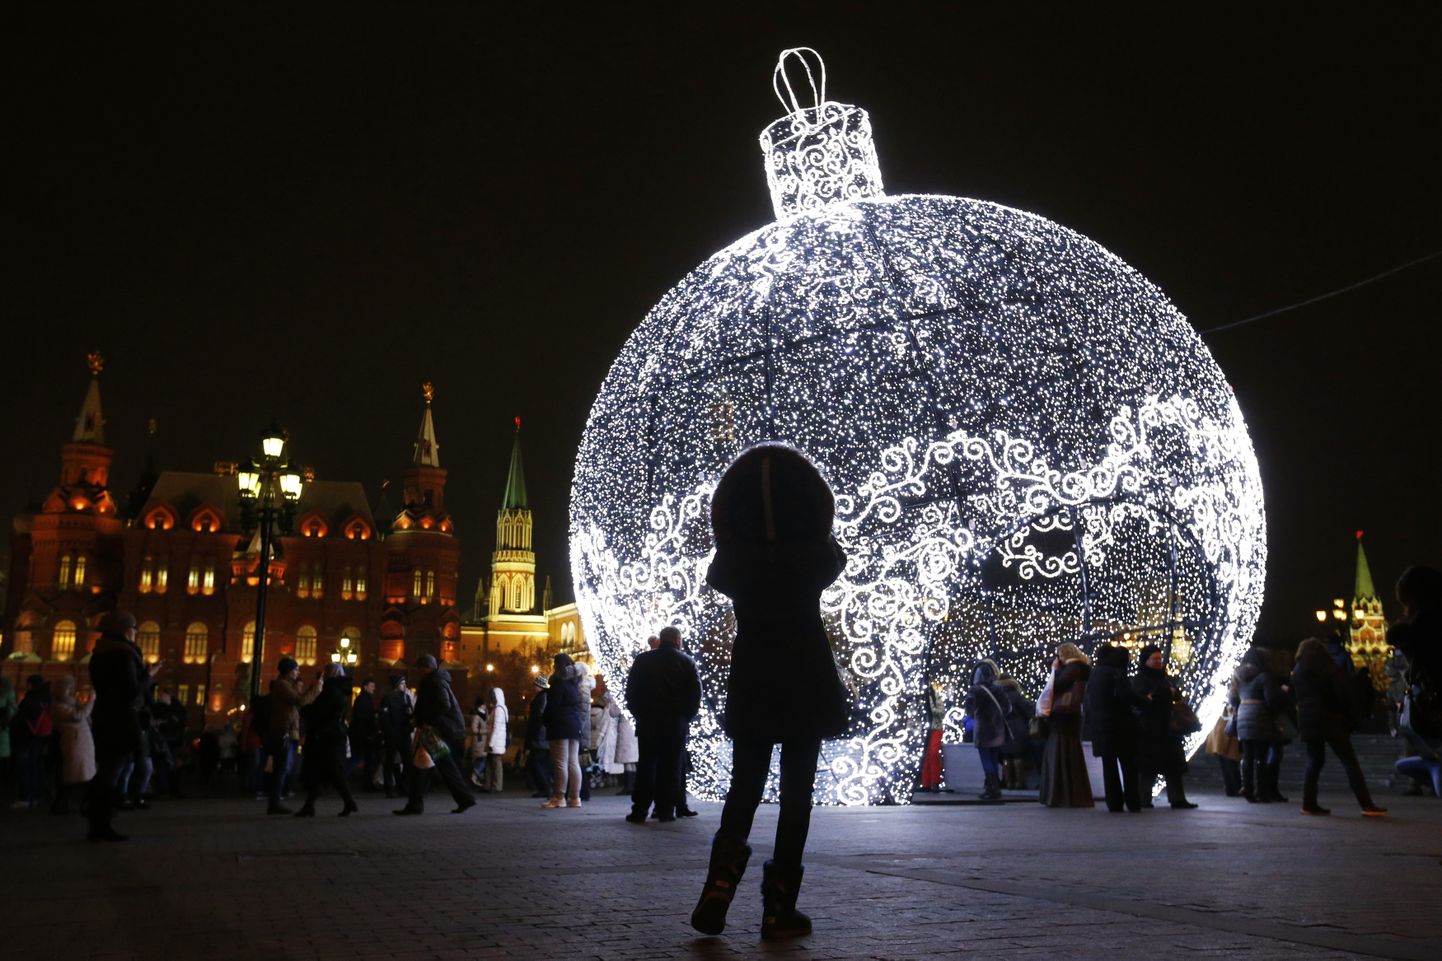 Этот гигантский рождественский шар, который являлся частью новогодних и рождественских праздничных украшений в Москве в 1014 году, занимает в Книге рекордов Гиннесса как самая большая рождественская игрушка в мире (11,5 метров в высоту).